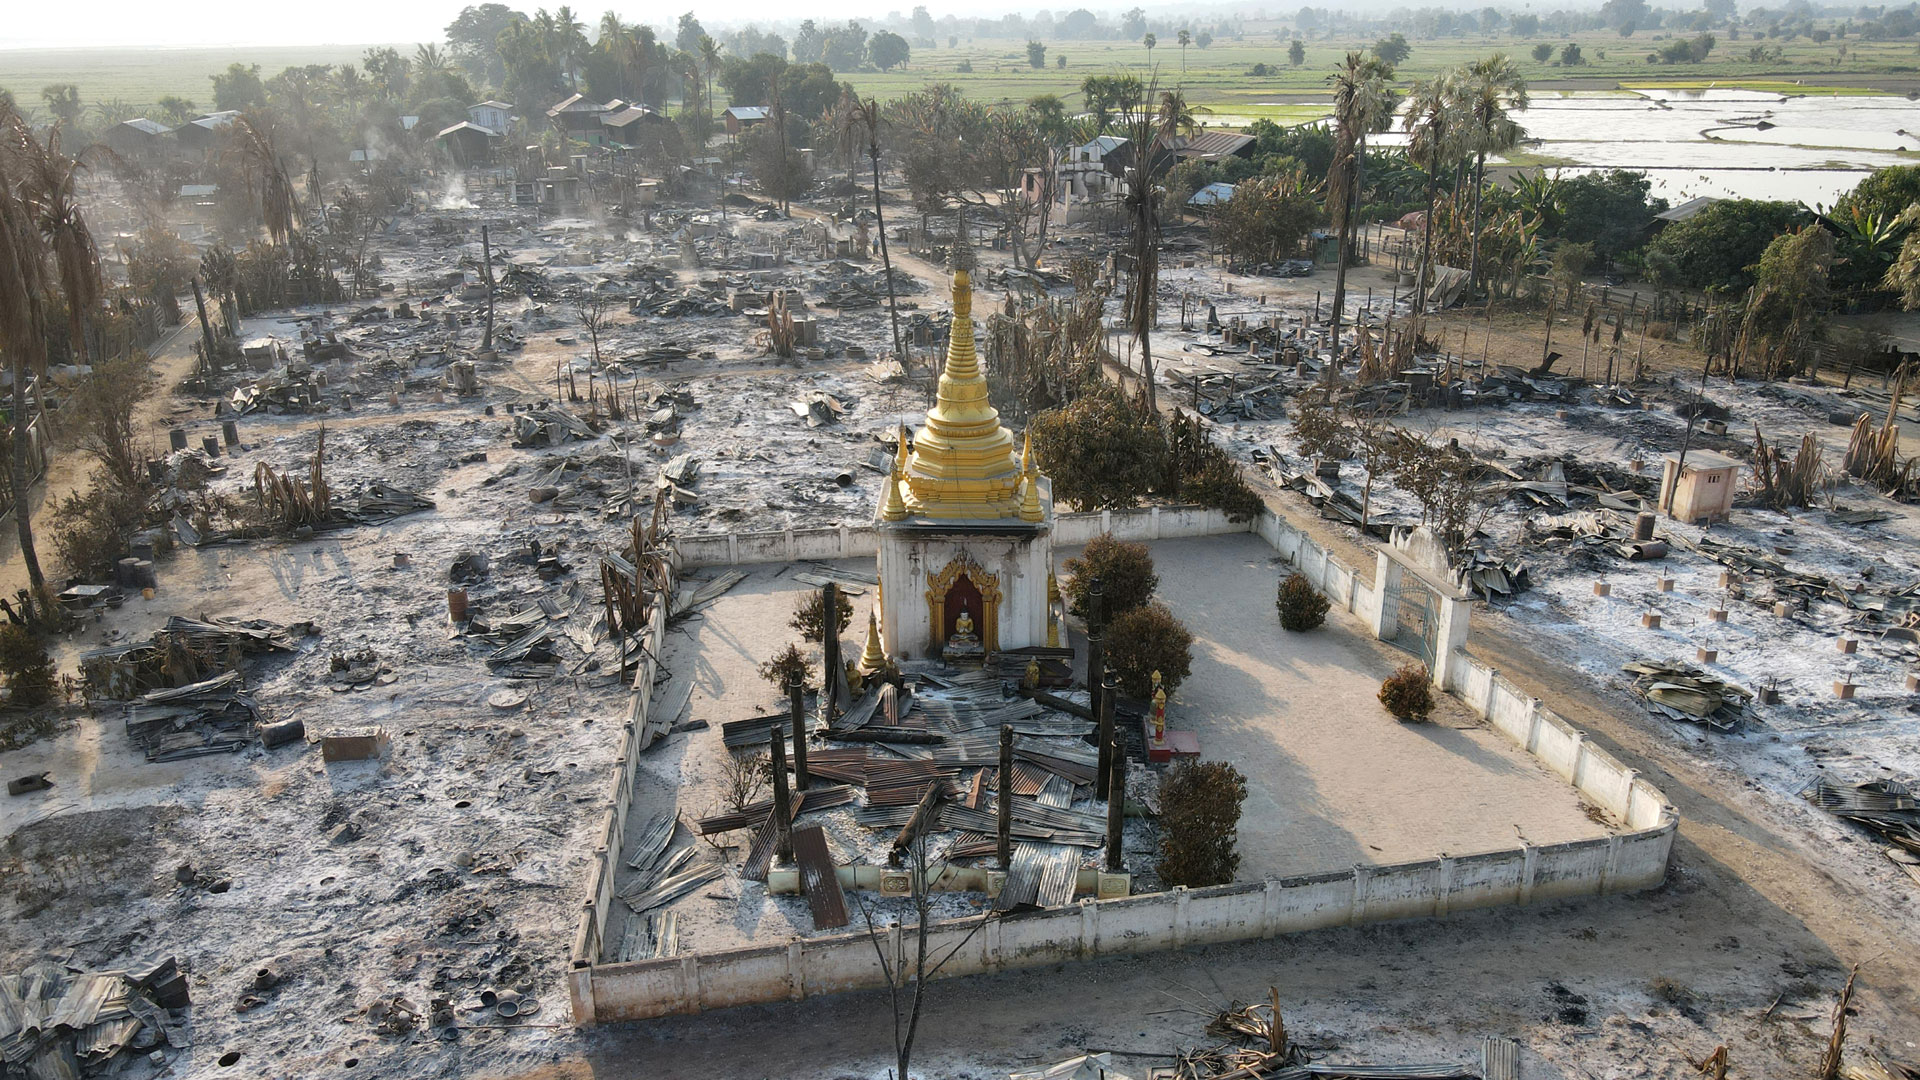 နှစ်လခွဲအတွင်း နေအိမ်၊ အဆောက်အအုံ ၂၀,၀၀၀ နီးပါး မီးရှို့ဖျက်ဆီးခြင်း ခံခဲ့ရ